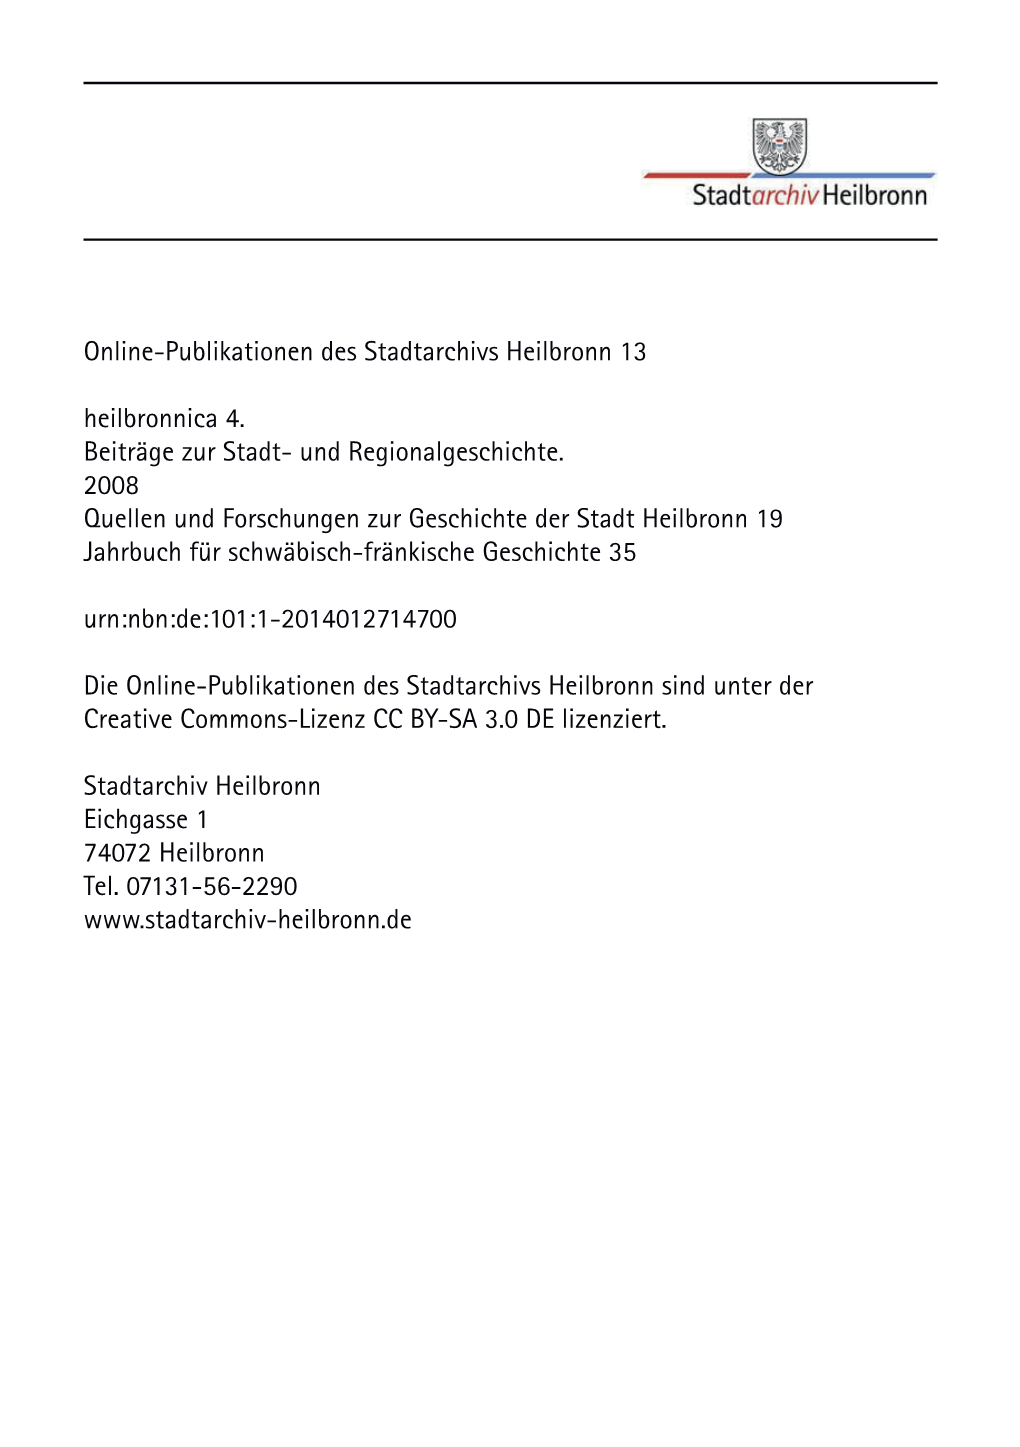 Heilbronnica 4. Beiträge Zur Stadt- Und Regionalgeschichte